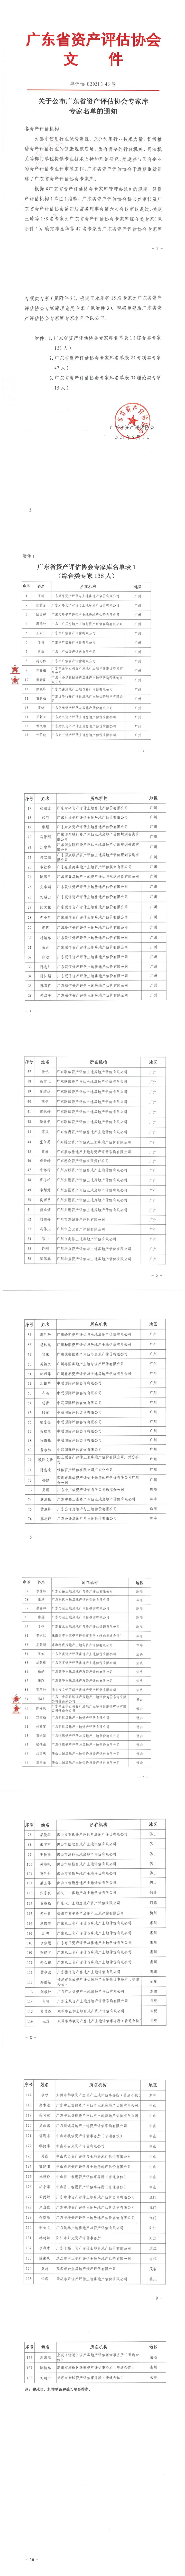 关于公布广东省资产评估协会专家库专家名单的通知(1)_00_0.jpg